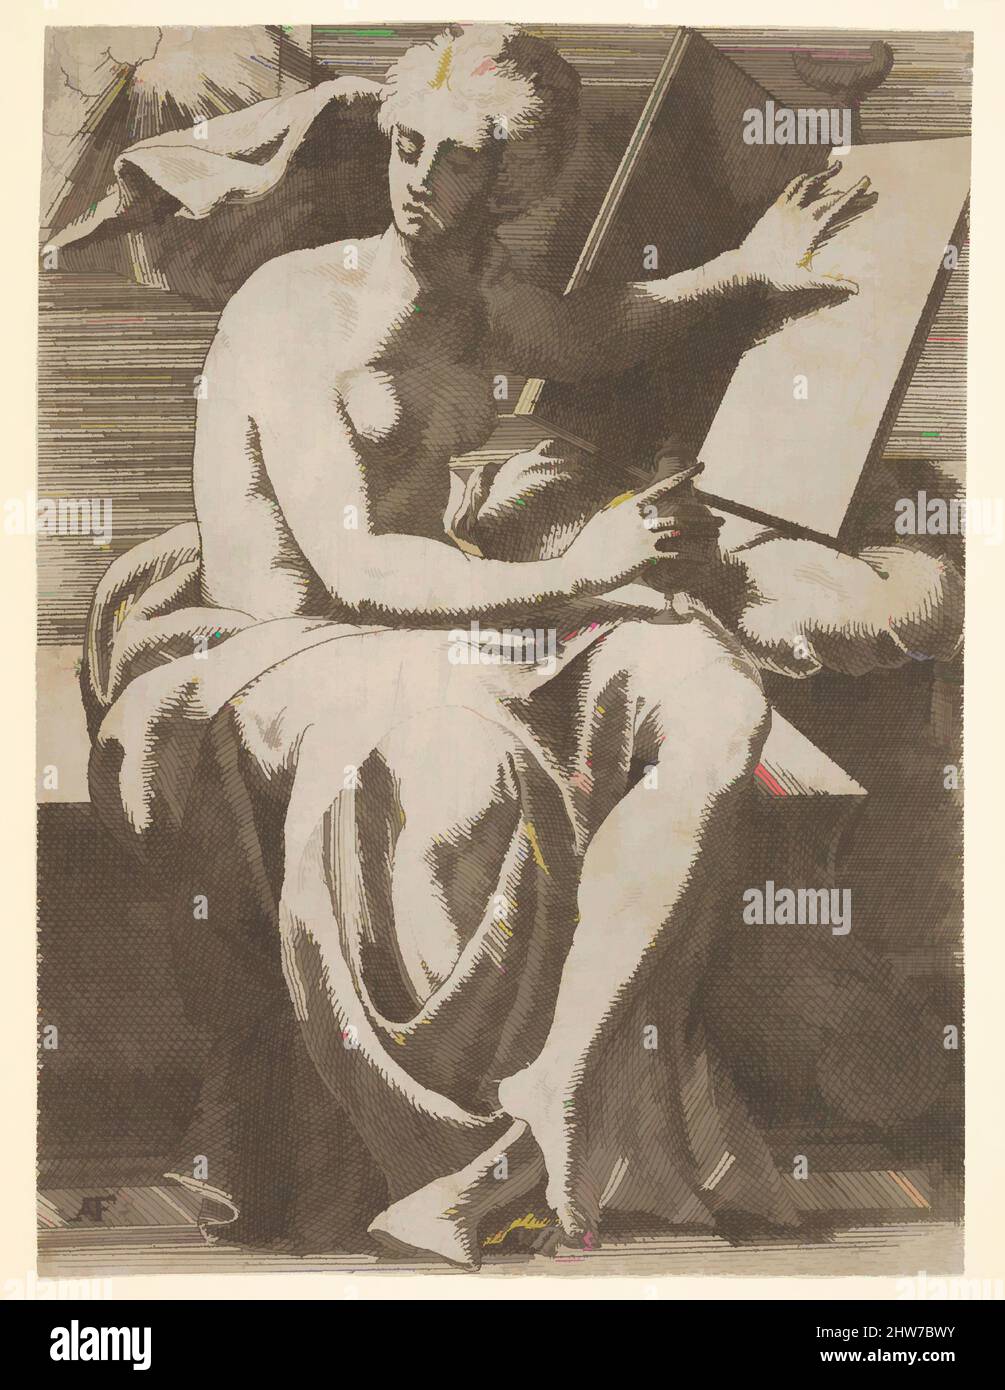 Von Sibyl inspirierte Kunst vor einem offenen Buch sitzend, auf dem sie ihre linke Hand auflegt, dreht sie ihr Gesicht vom Buch weg und hält ein Gefäß in ihrer rechten Hand, Ätzung, Blatt: 8 7/8 x 6 9/16 Zoll (22,5 x 16,7 cm), Drucke, Antonio Fantuzzi (Italienisch, aktives Frankreich, 1537–45), Danach modernisierte Classic Works von Artotop mit einem Schuss Moderne. Formen, Farbe und Wert, auffällige visuelle Wirkung auf Kunst. Emotionen durch Freiheit von Kunstwerken auf zeitgemäße Weise. Eine zeitlose Botschaft, die eine wild kreative neue Richtung verfolgt. Künstler, die sich dem digitalen Medium zuwenden und die Artotop NFT erschaffen Stockfoto